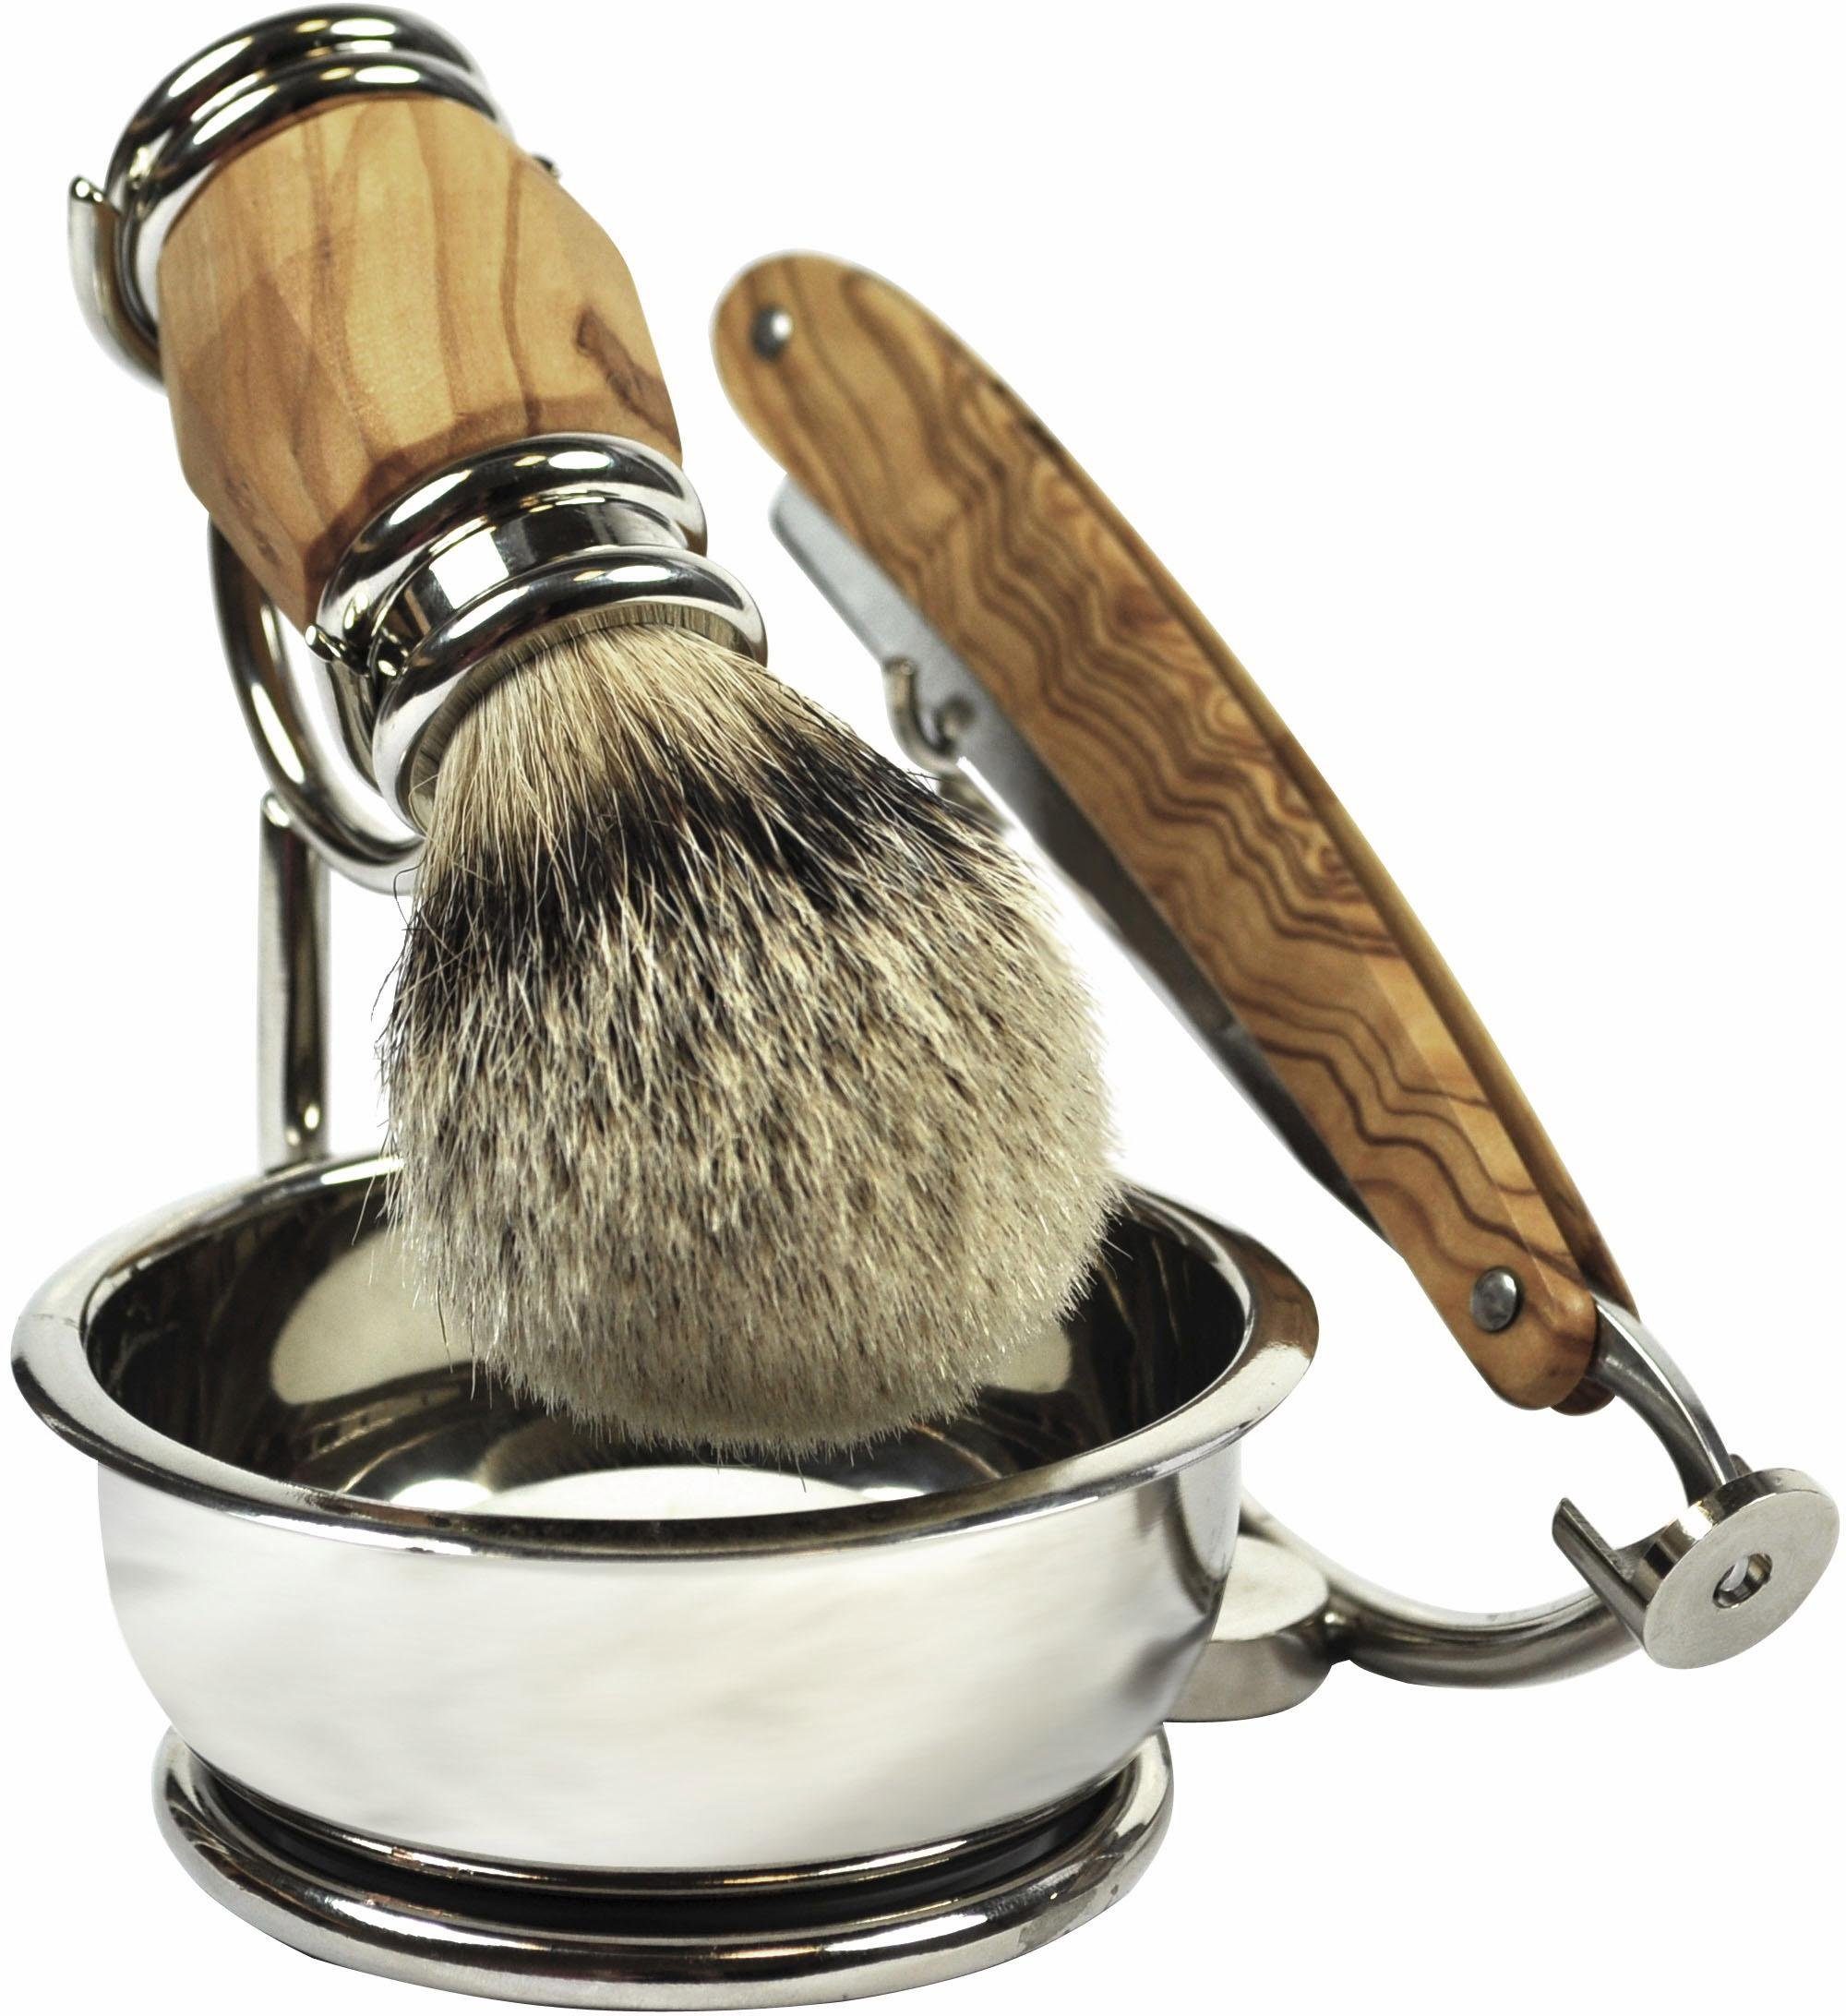 Golddachs Rasierset, 4-tlg., mit Rasiermesser, Pinsel (Silberspitze) und  Seifenschale online kaufen | OTTO